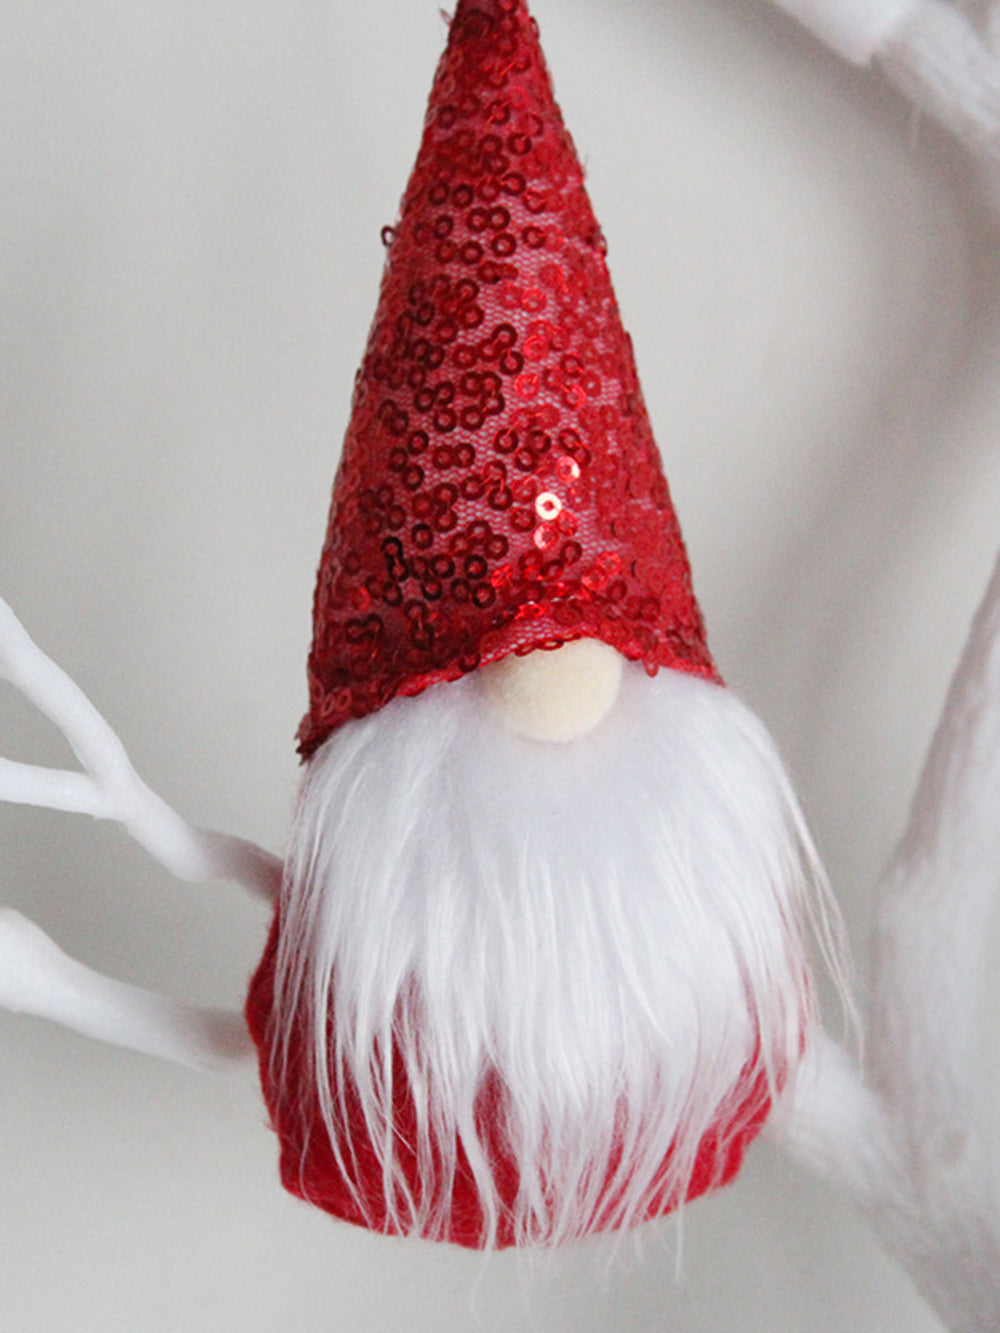 7-teiliges glitzerndes No-Face-Zwergpuppen-Ornament-Set für den Weihnachtsbaum